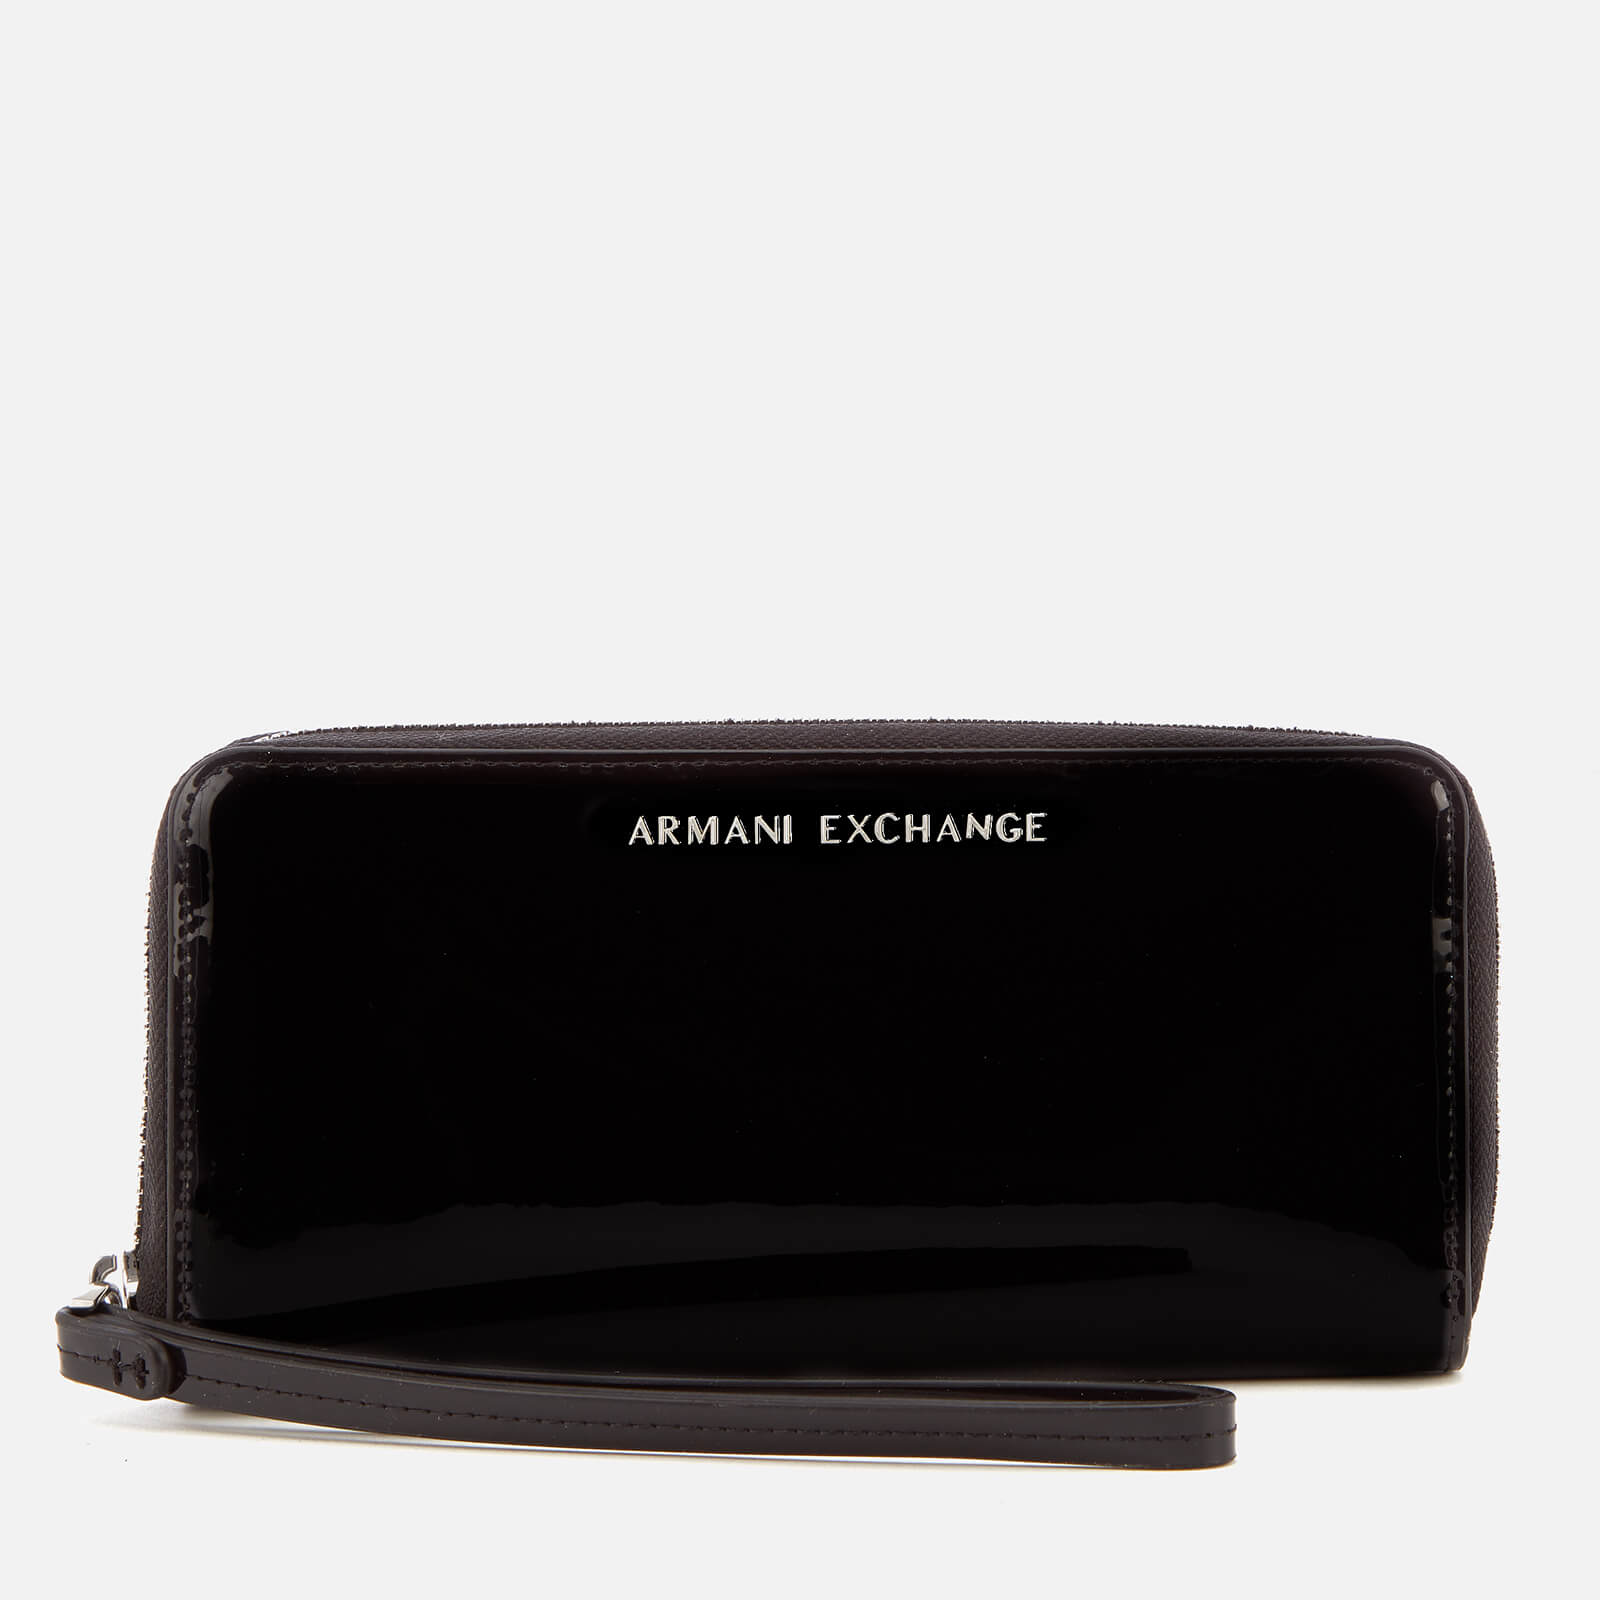 Armani Exchange Women's Wristlet Purse 